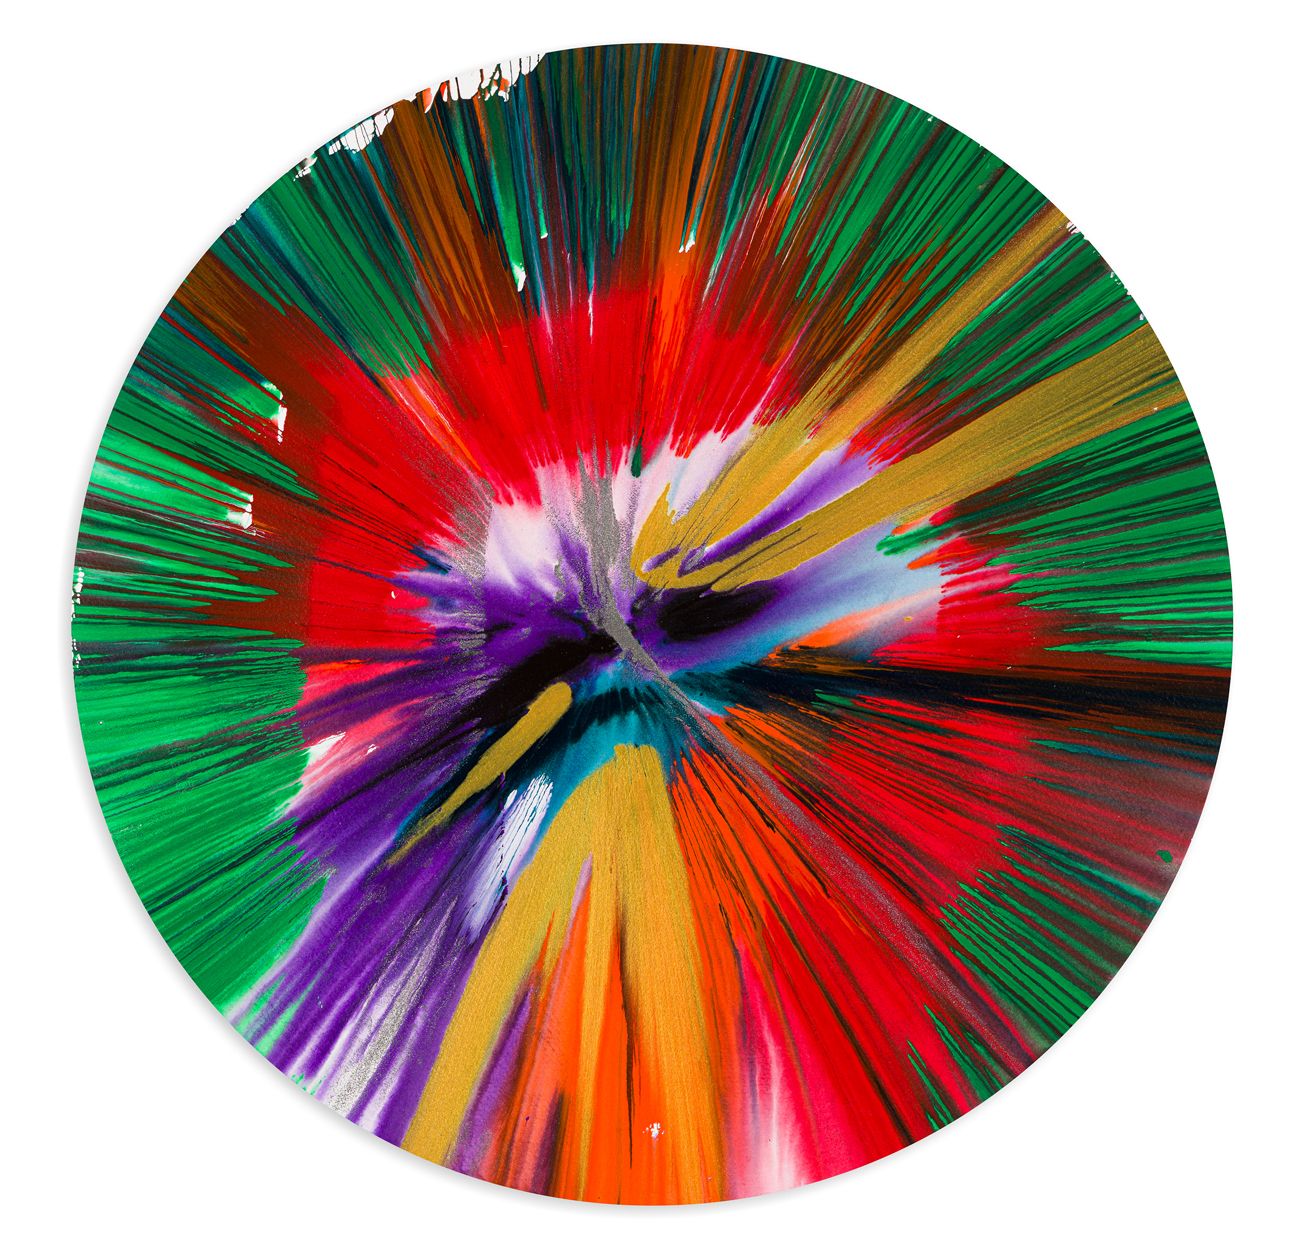 DAMIEN HIRST (1965) - Circle Spin Painting, 2009 纸上丙烯和金属颜料

直径52厘米

签名丝网印刷，背面有艺术&hellip;